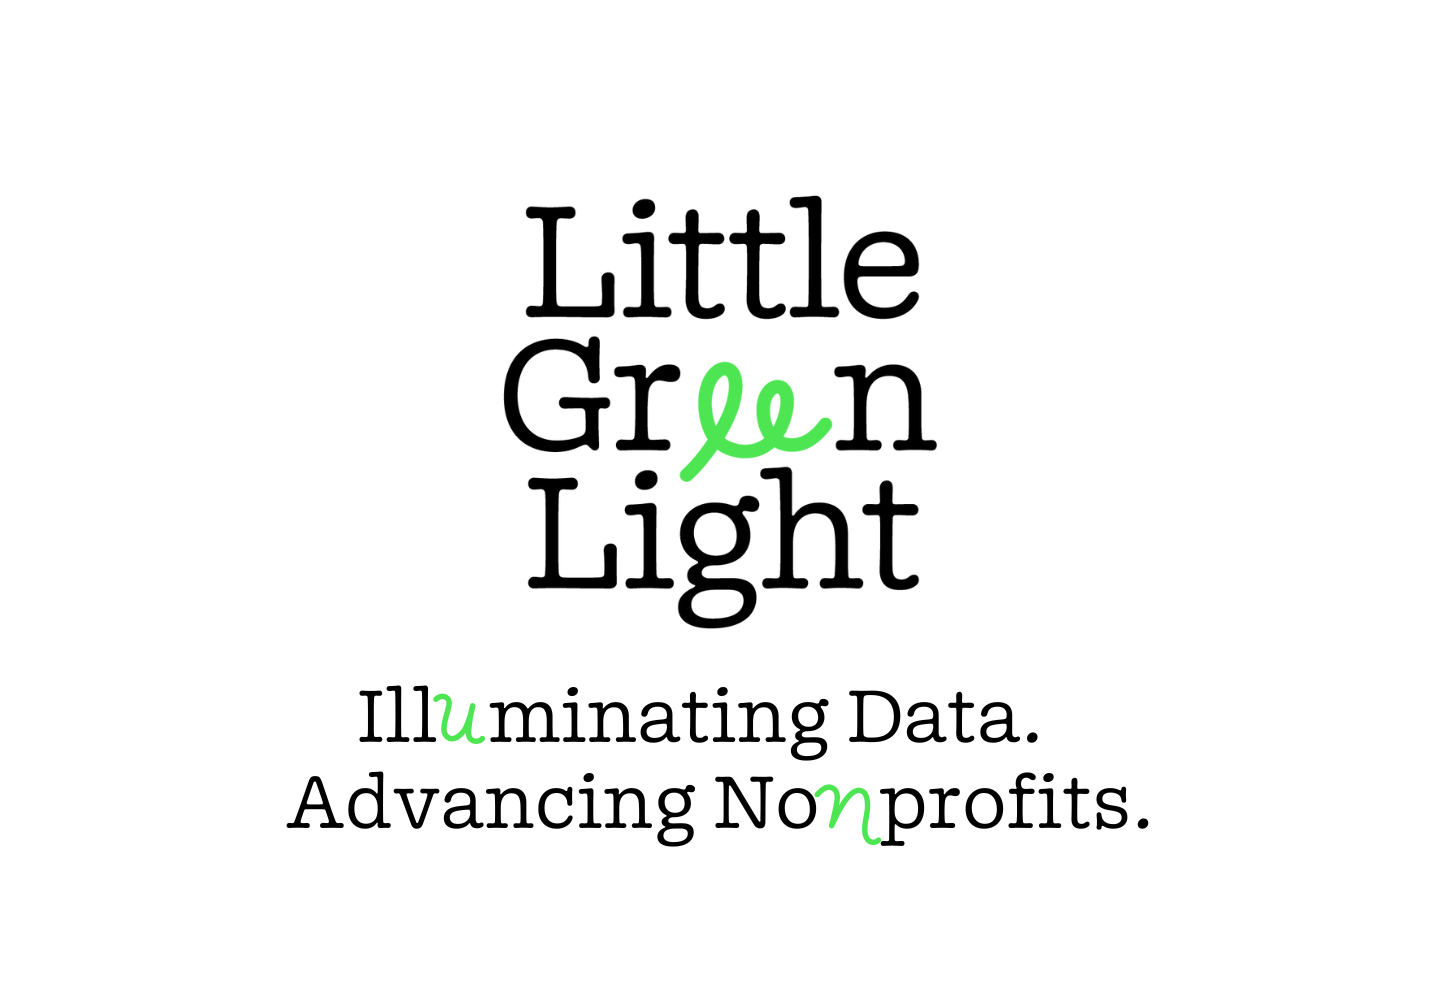 LGL logo with tagline